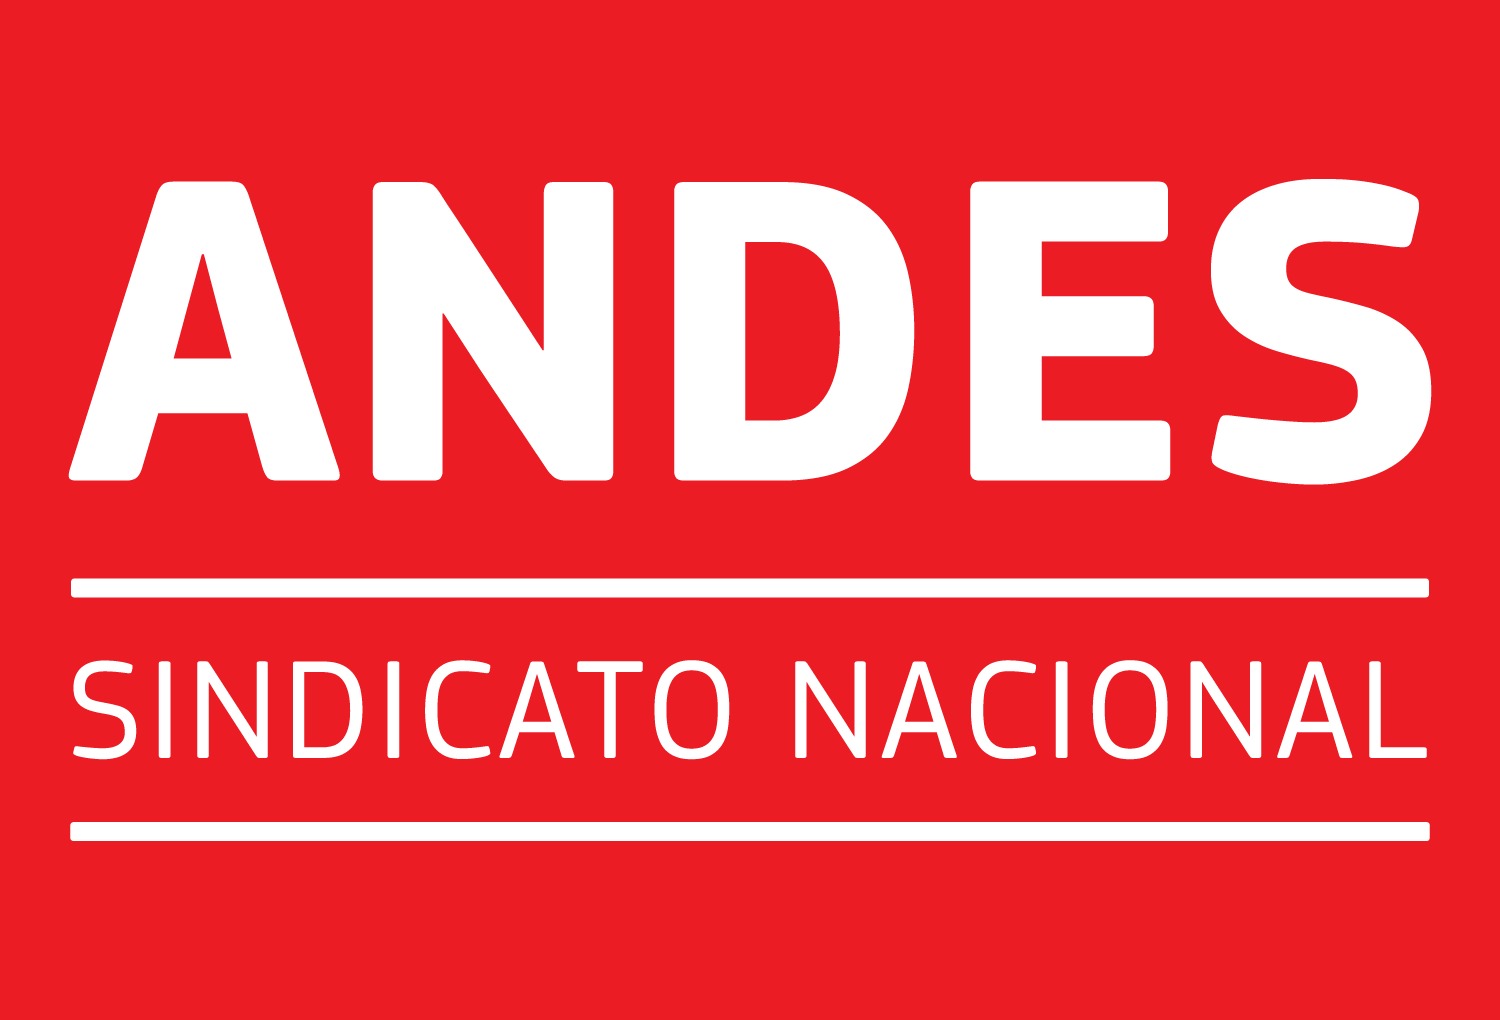 Andes - Sindical Nacional - Clique e leia